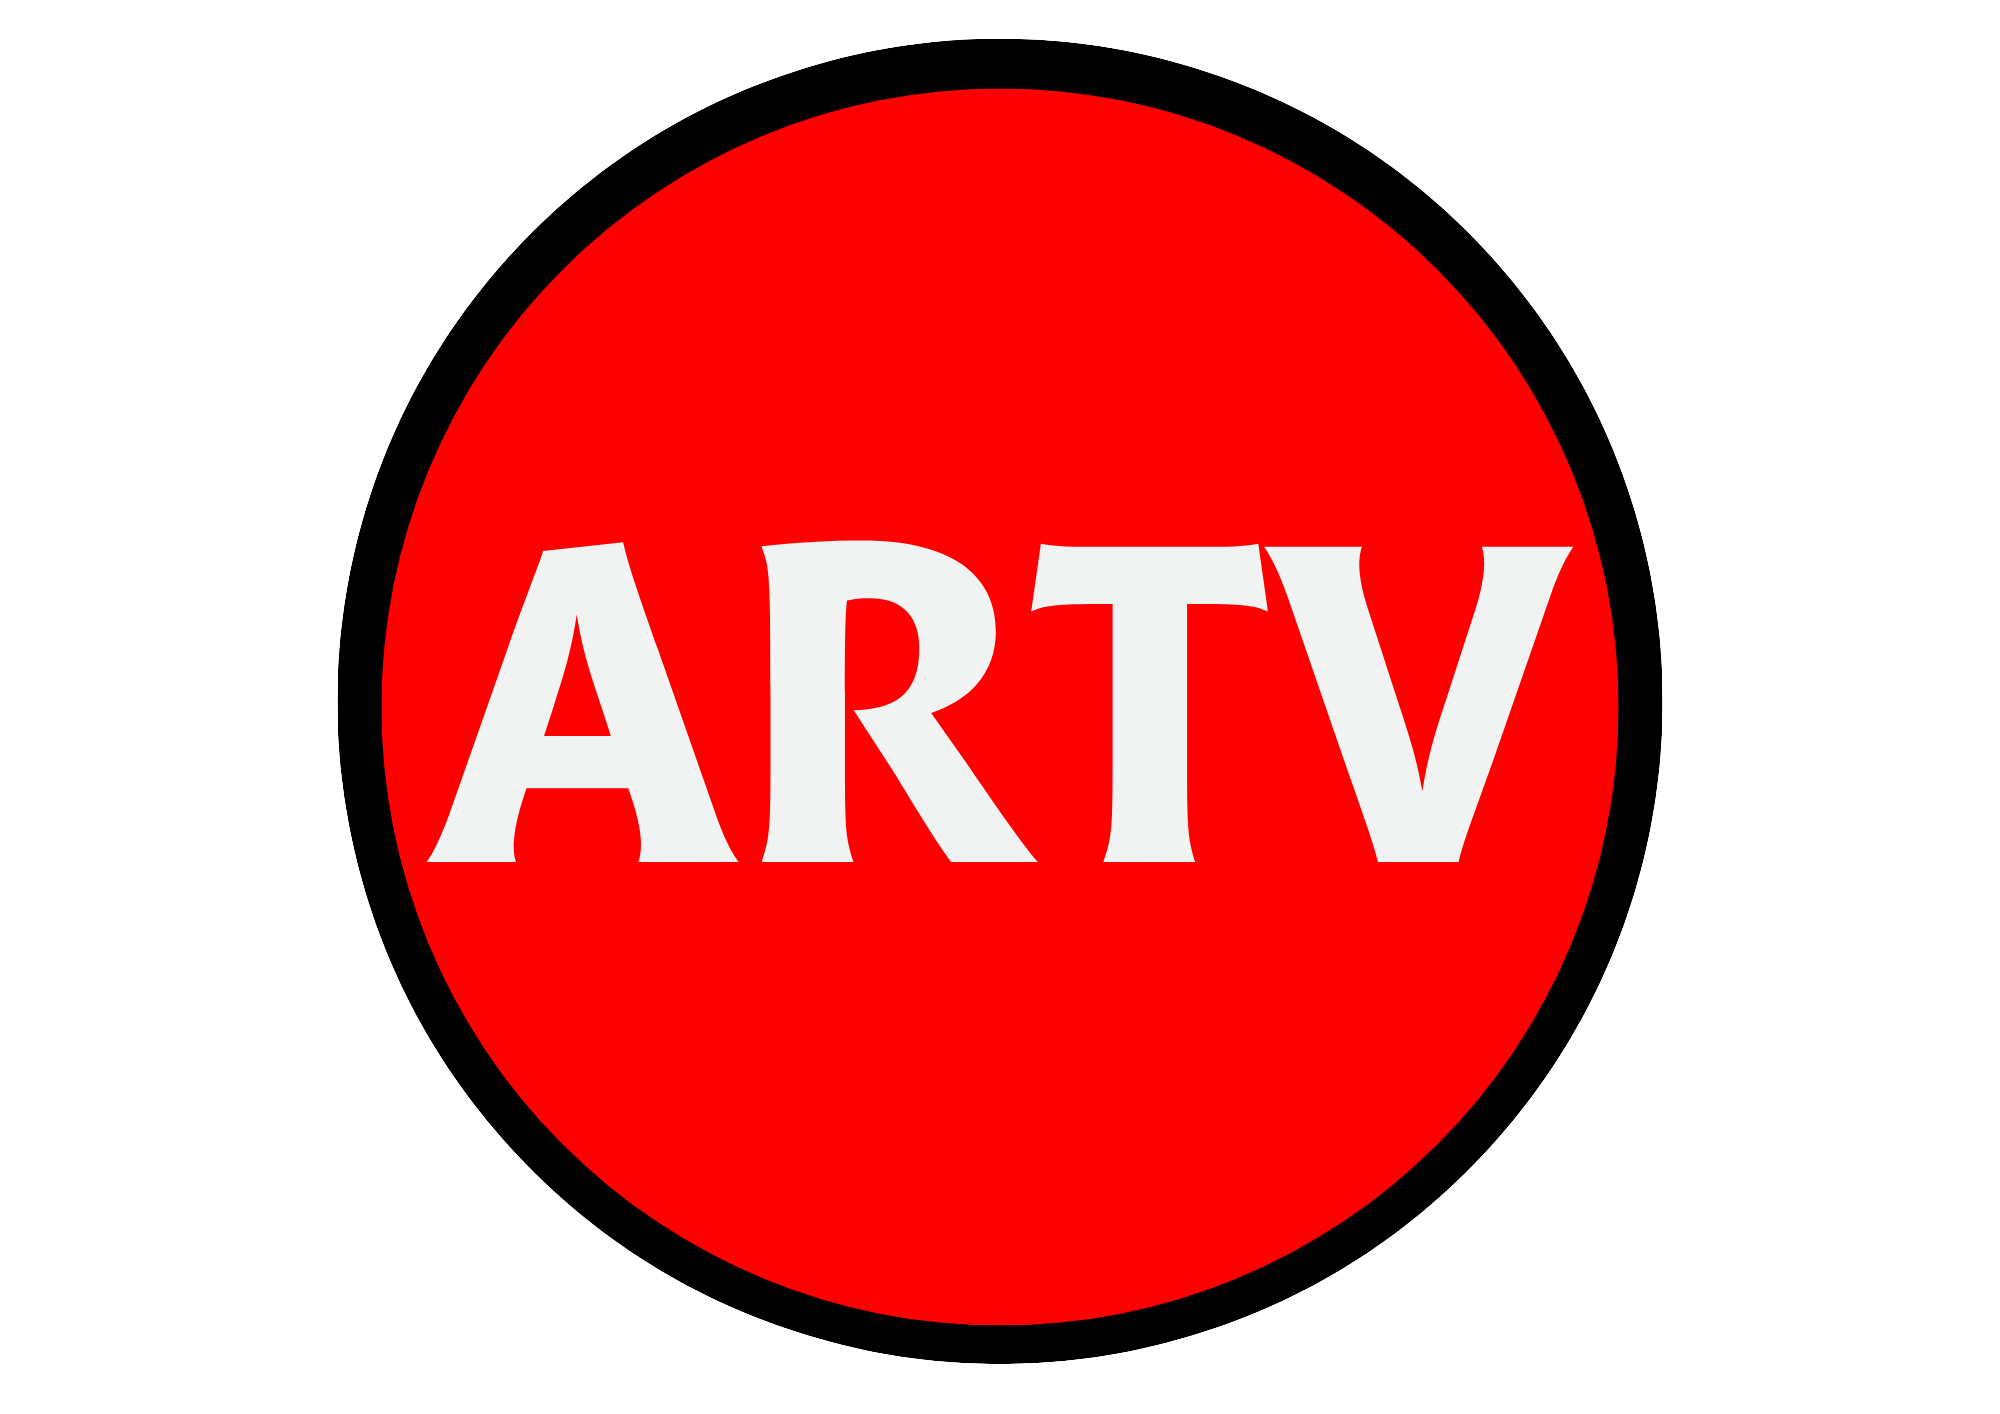 ARTV